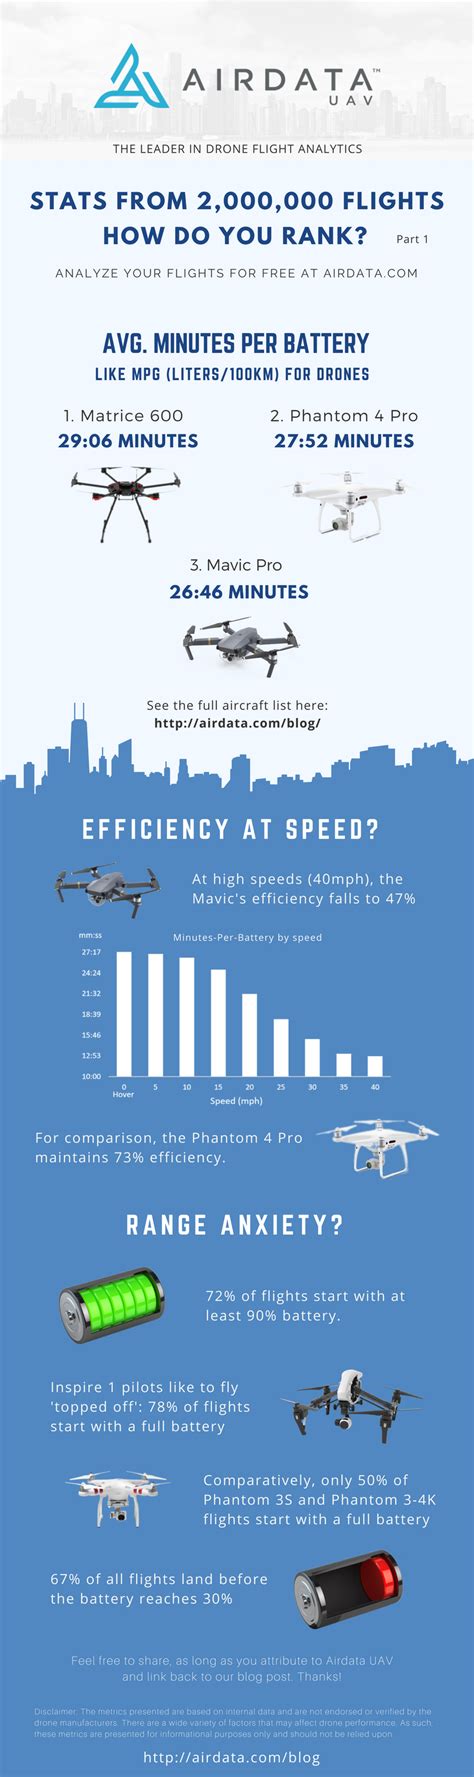 drone flight stats part  airdata uav drone blog